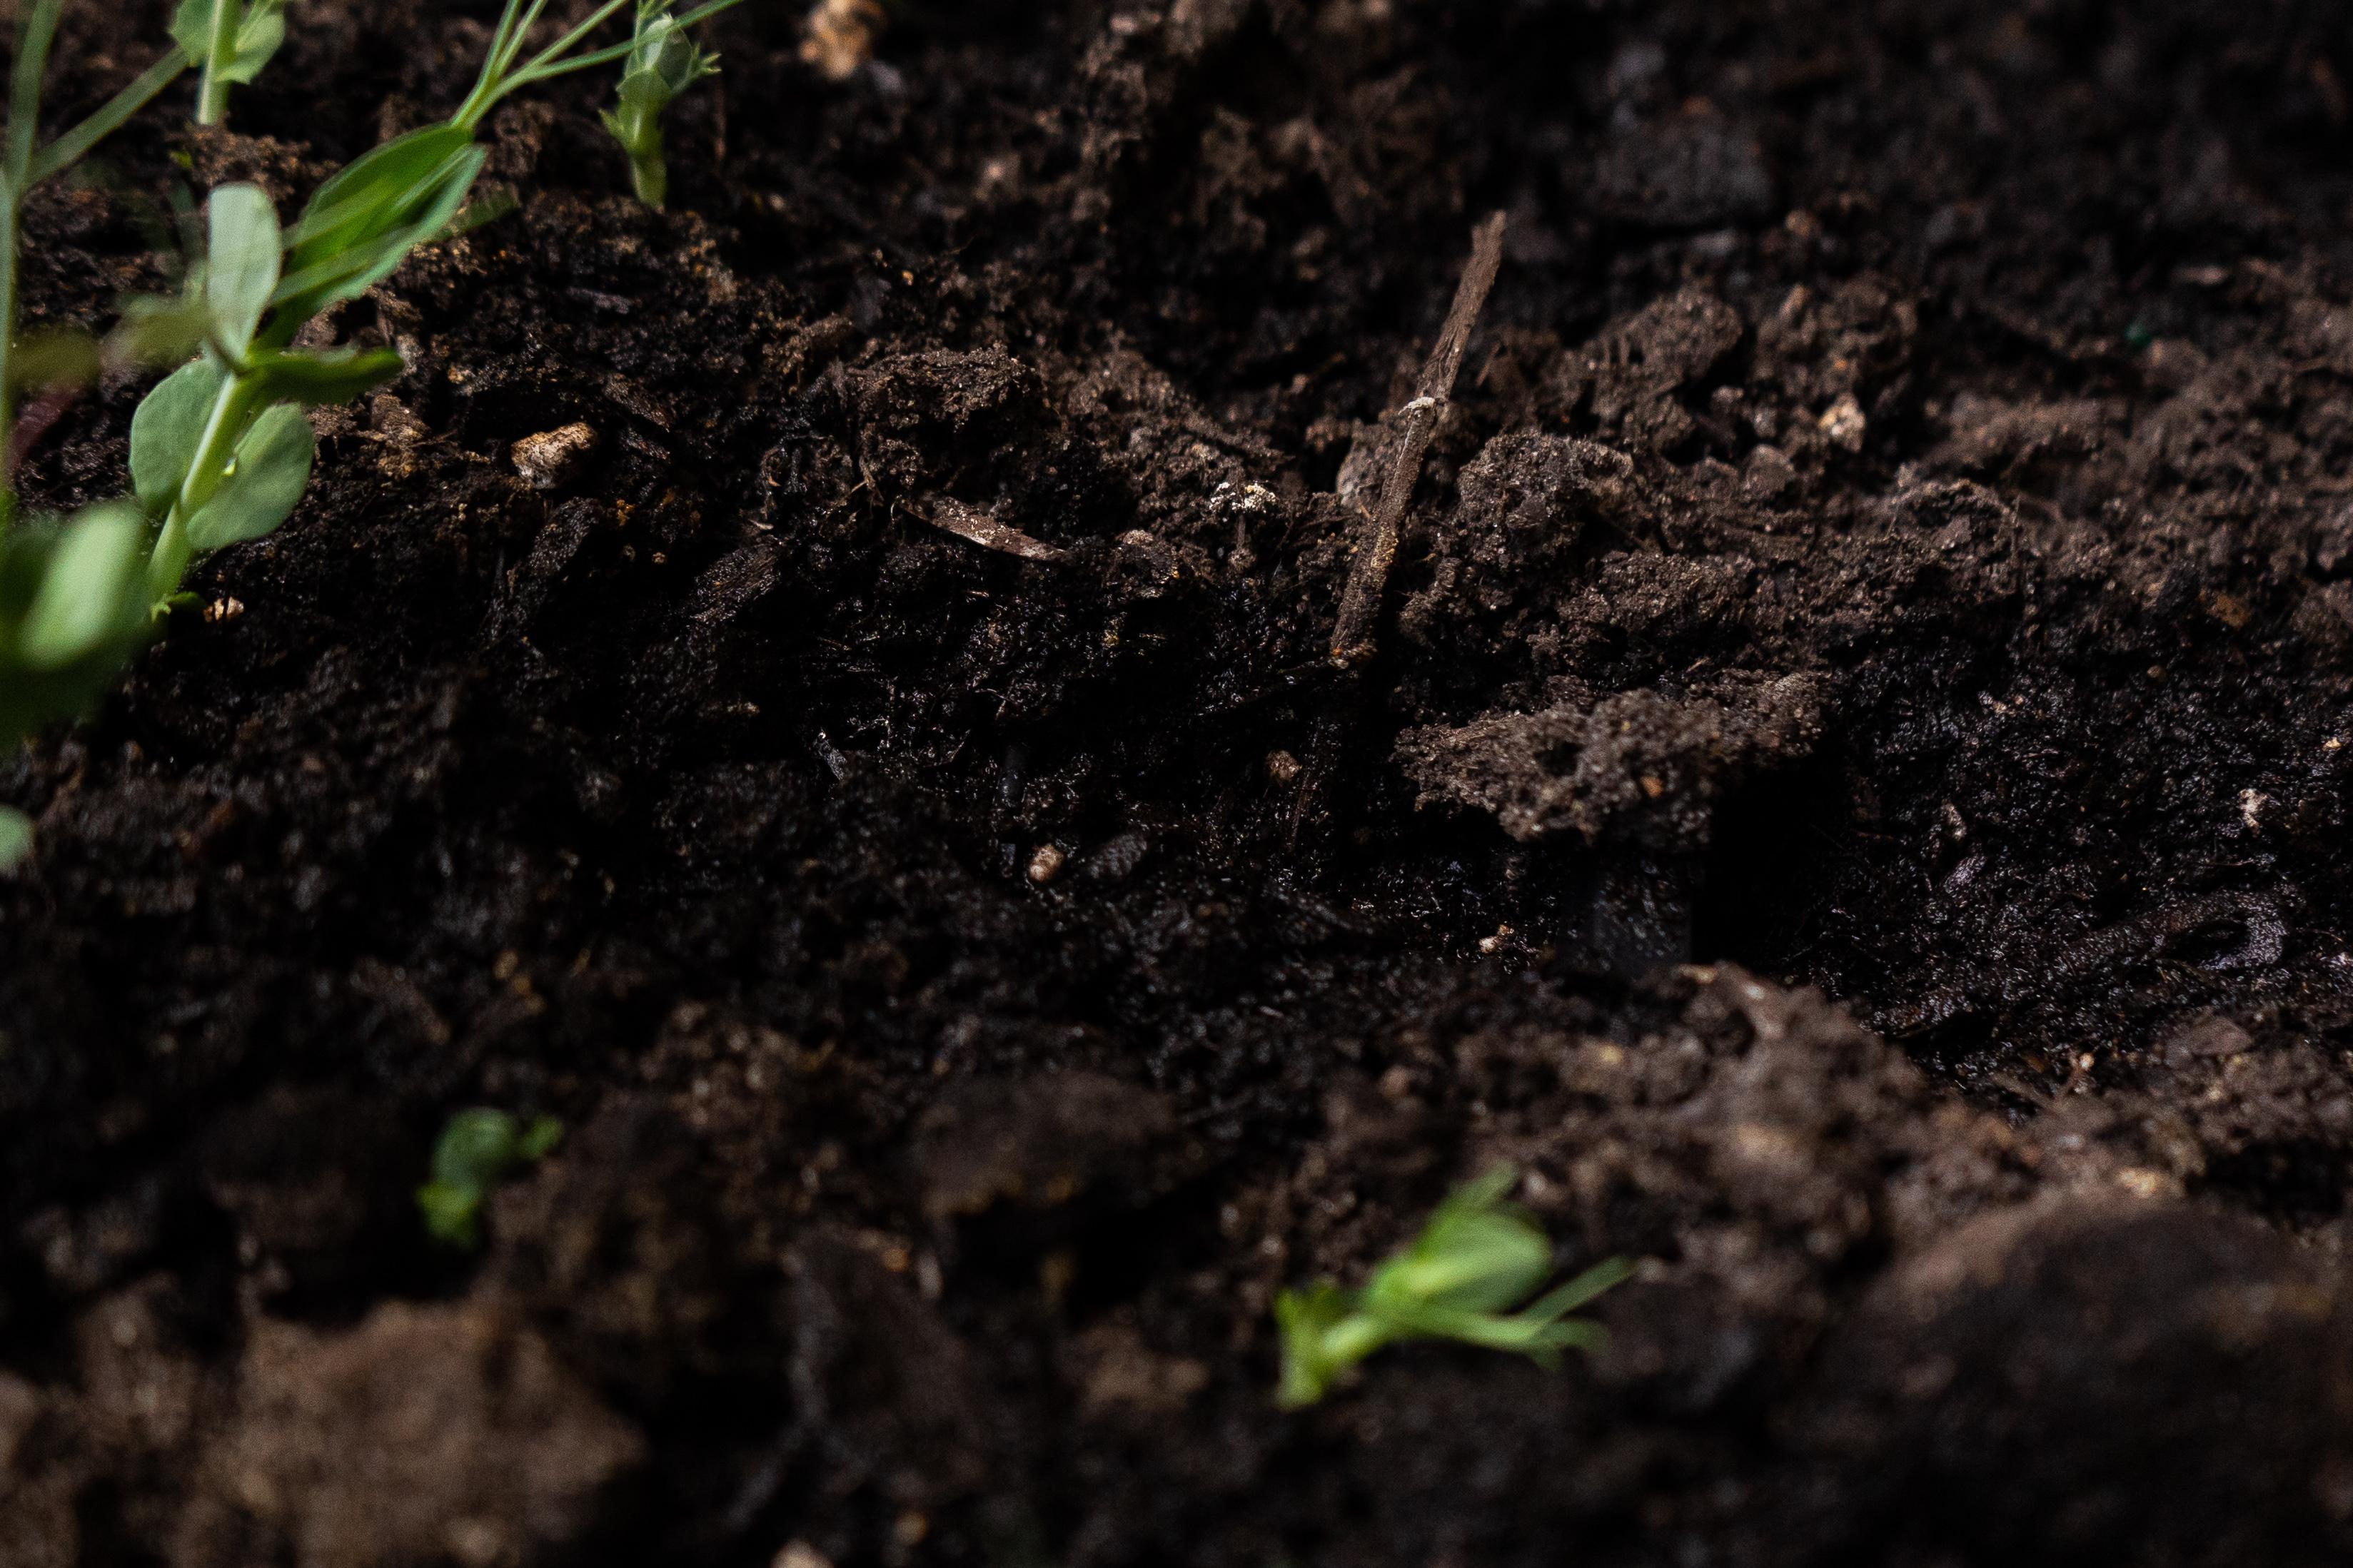 It's not dirt, it's soil.